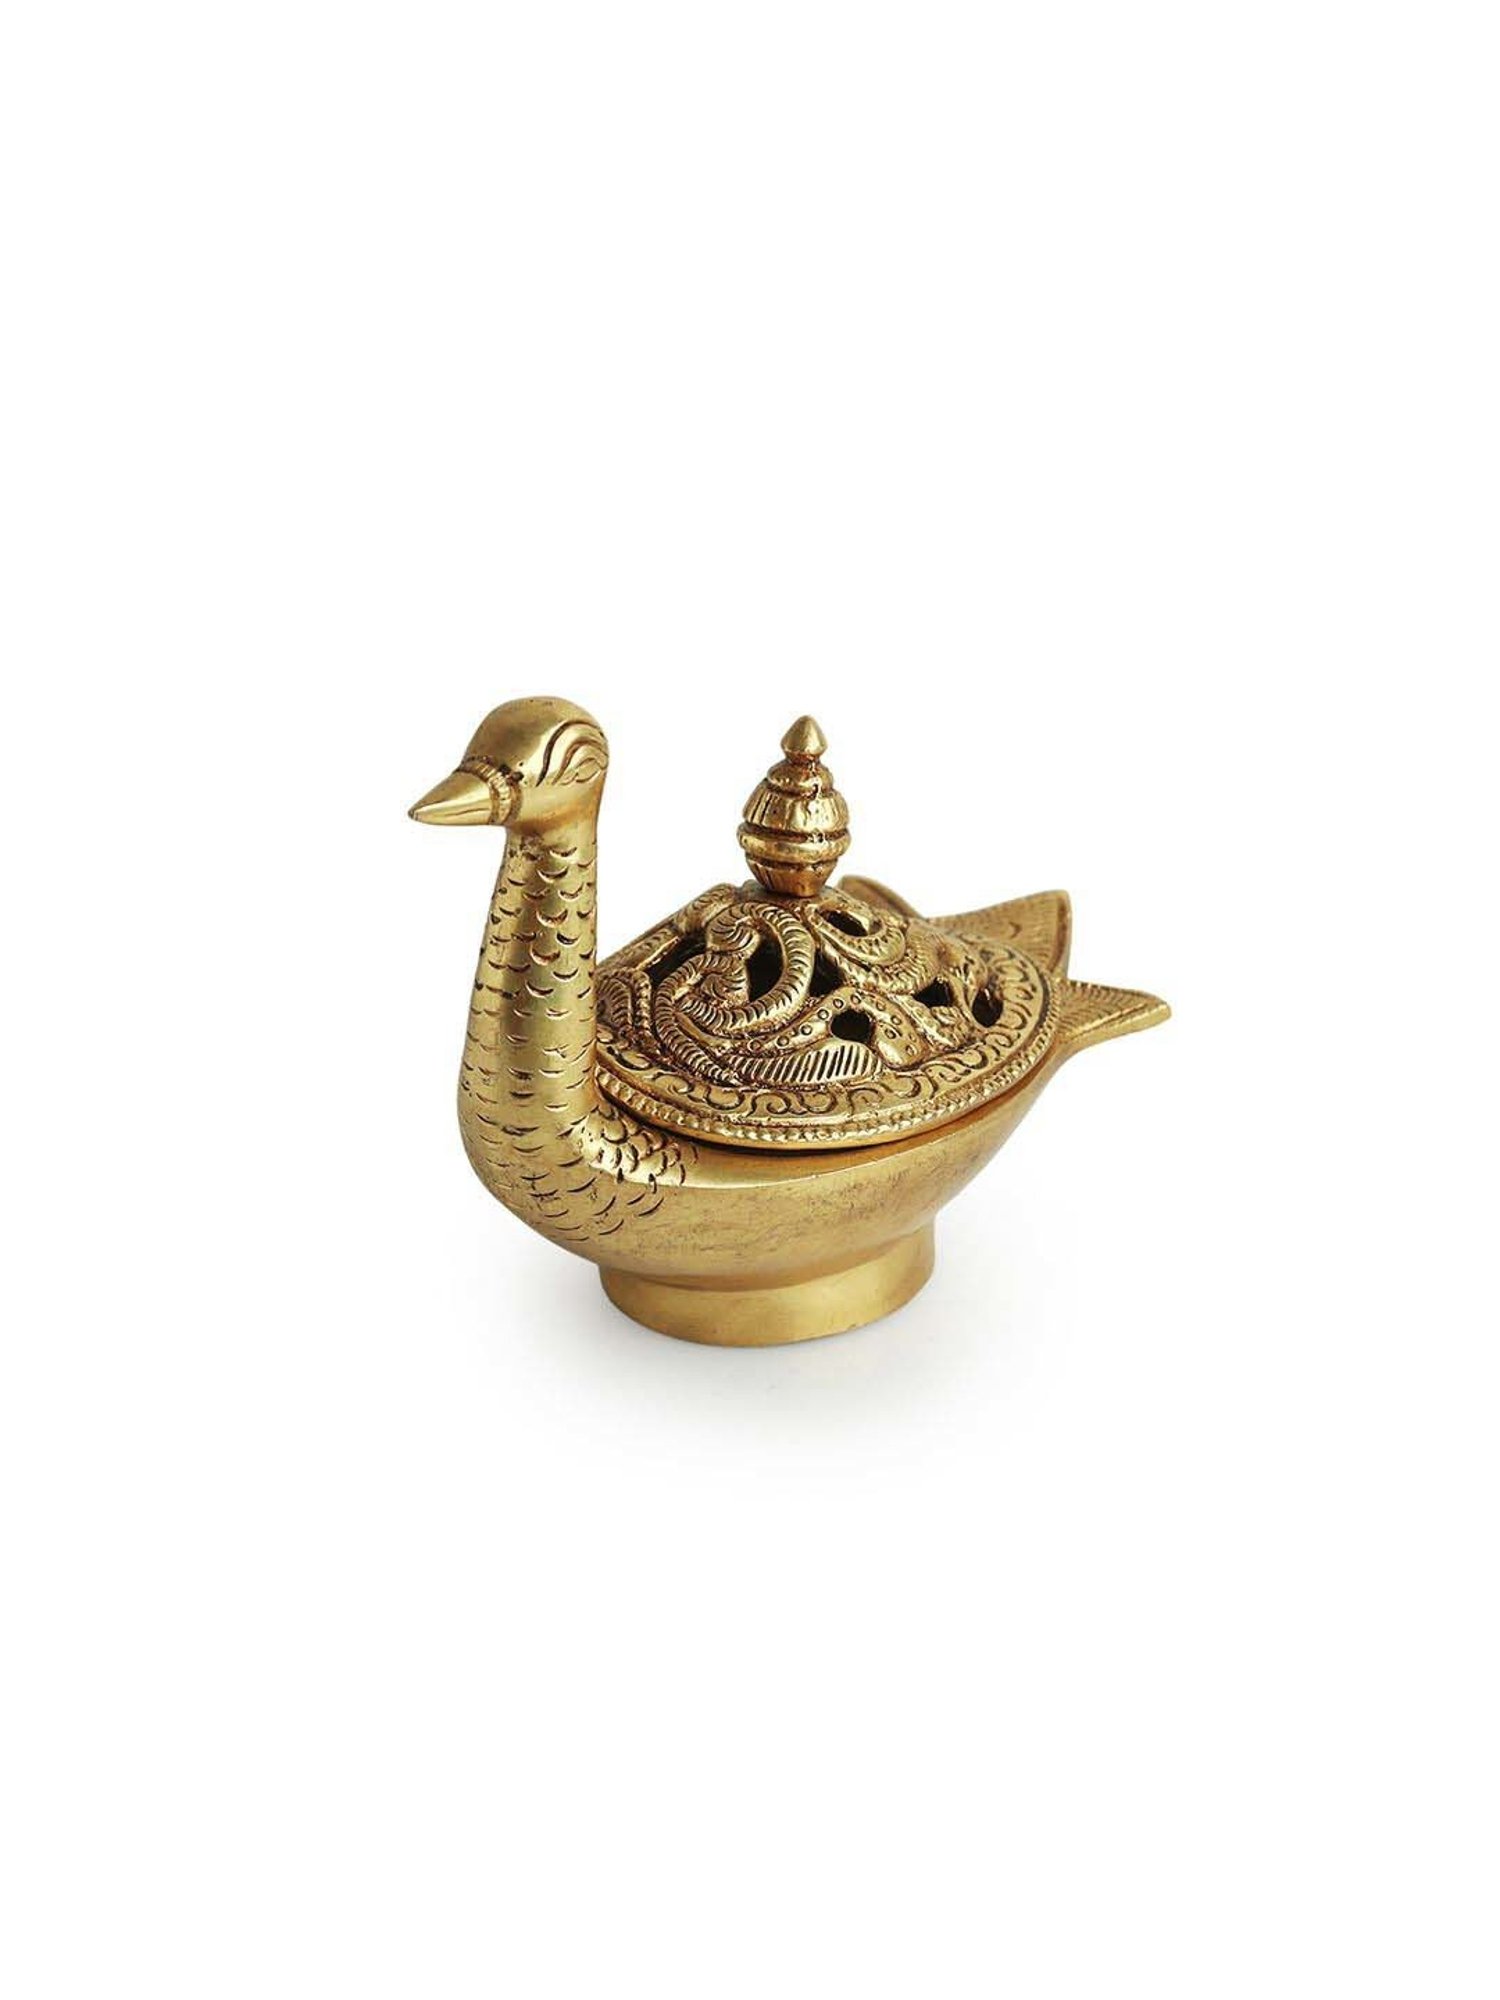 Buy ExclusiveLane Golden Brass Swan Dhoop Dani Handcarved Incense